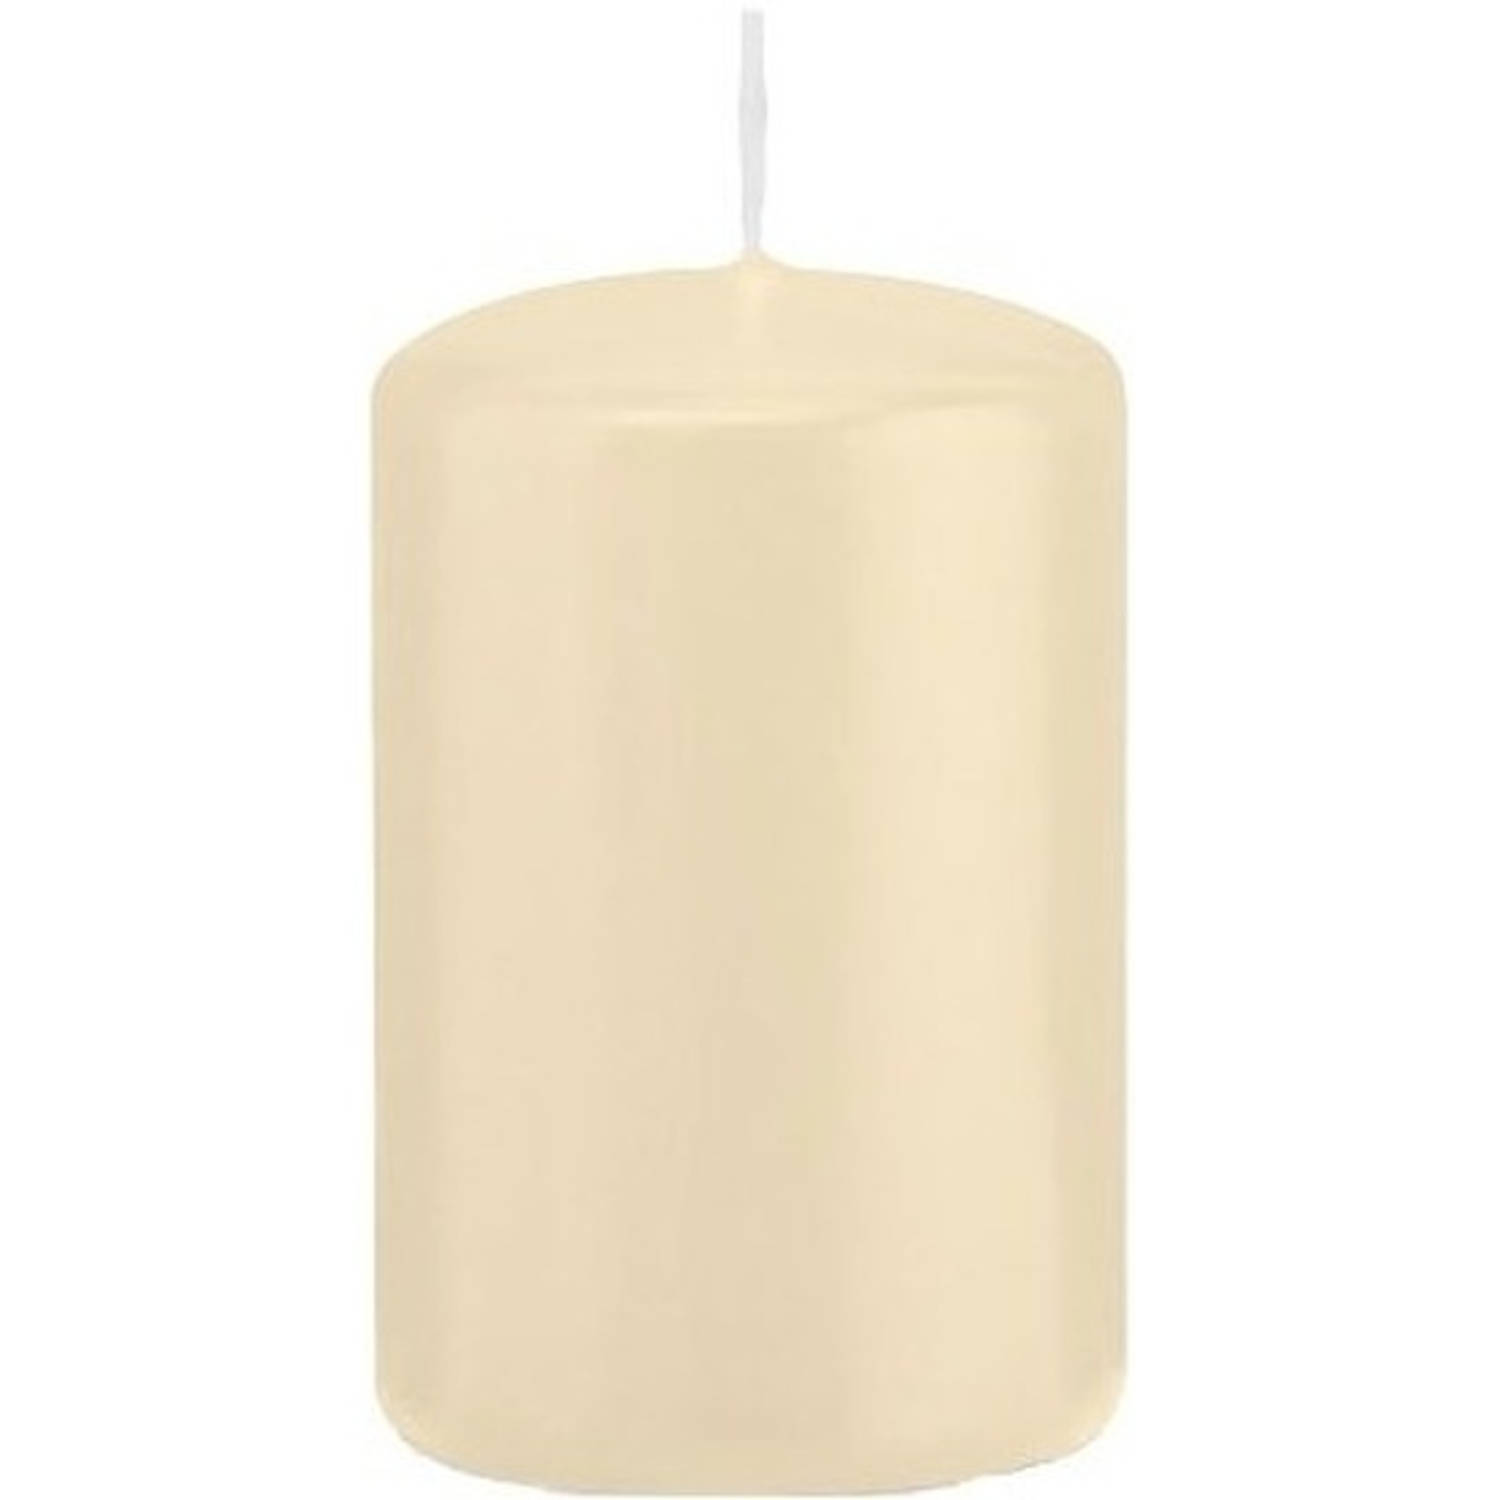 Trend Candles 1x Cremete Cilinderkaars/stompkaars 5 X 8 Cm 18 Branduren - Geurloze Kaarsen - Stompkaarsen - Wit